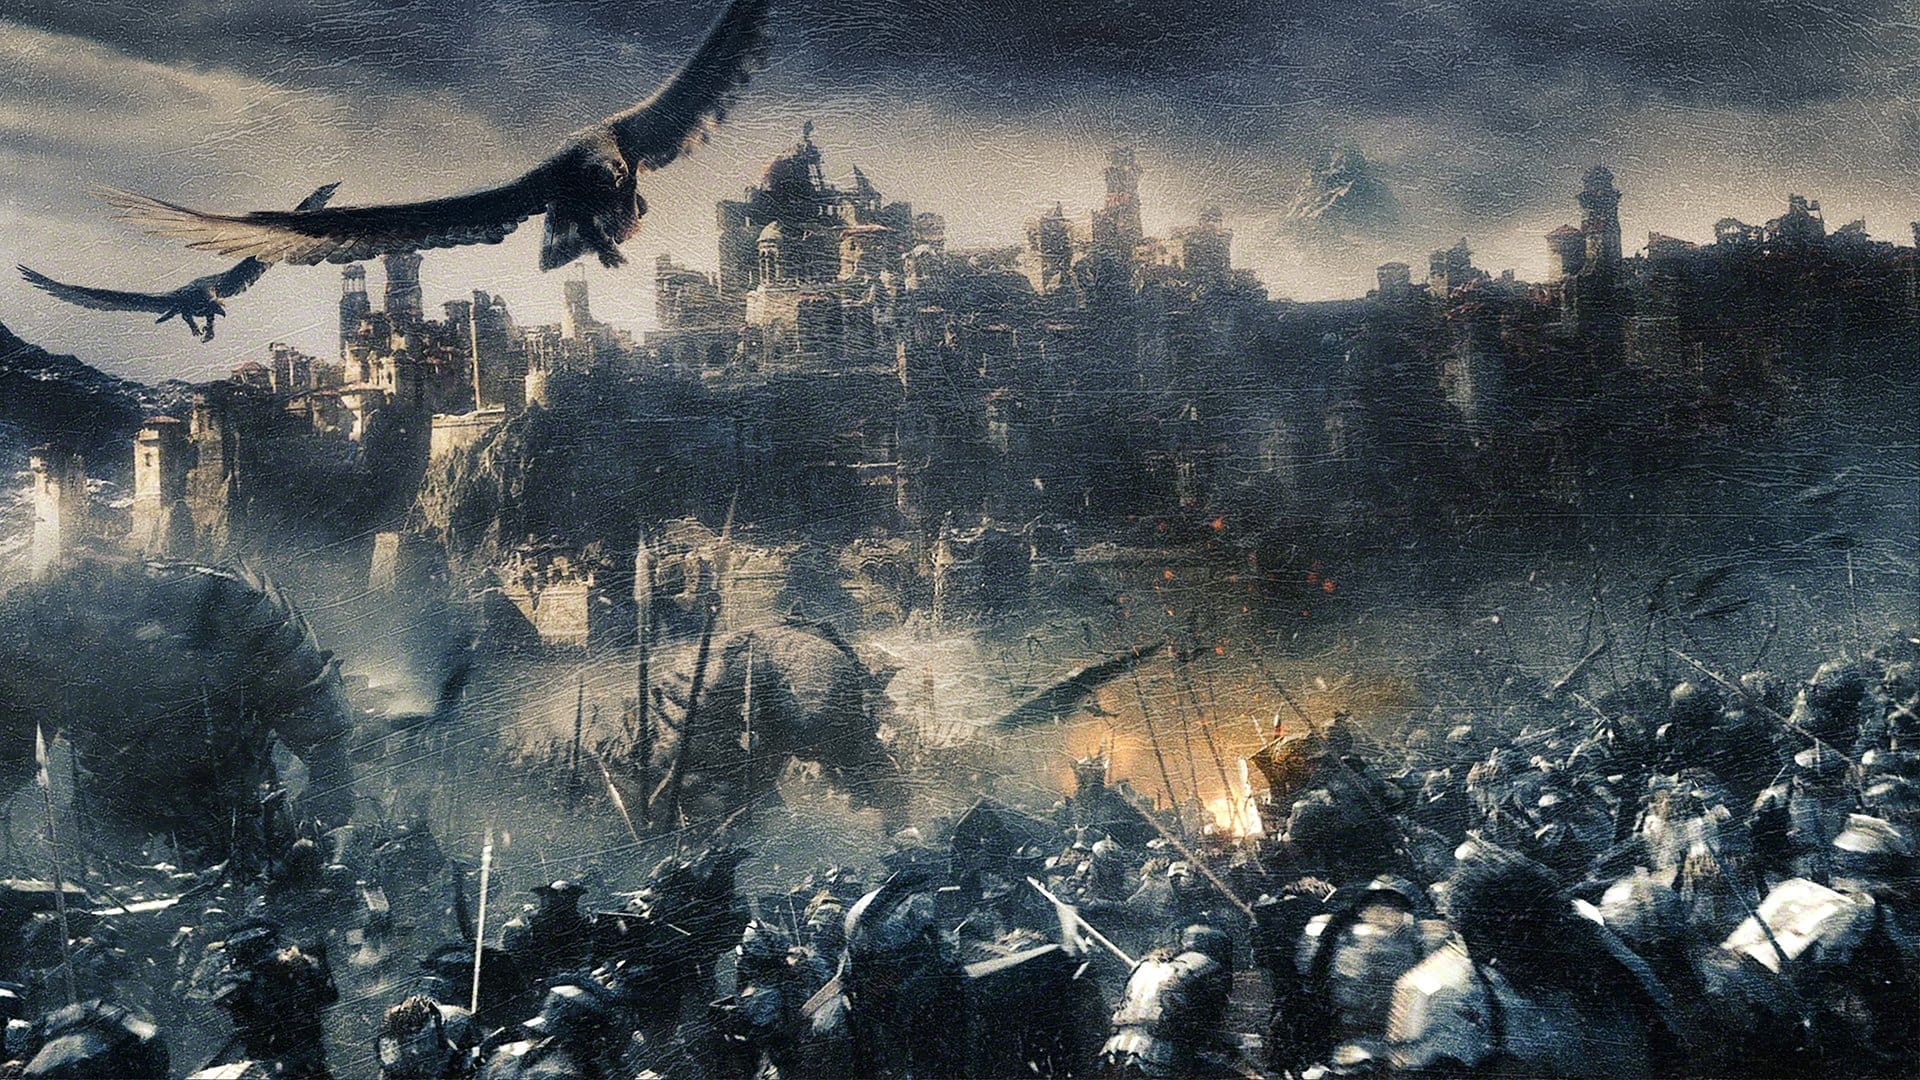 Image du film Le Hobbit : la bataille des cinq armées (version longue) u389ztwwseuyogzxu8zx1v0ldzvjpg